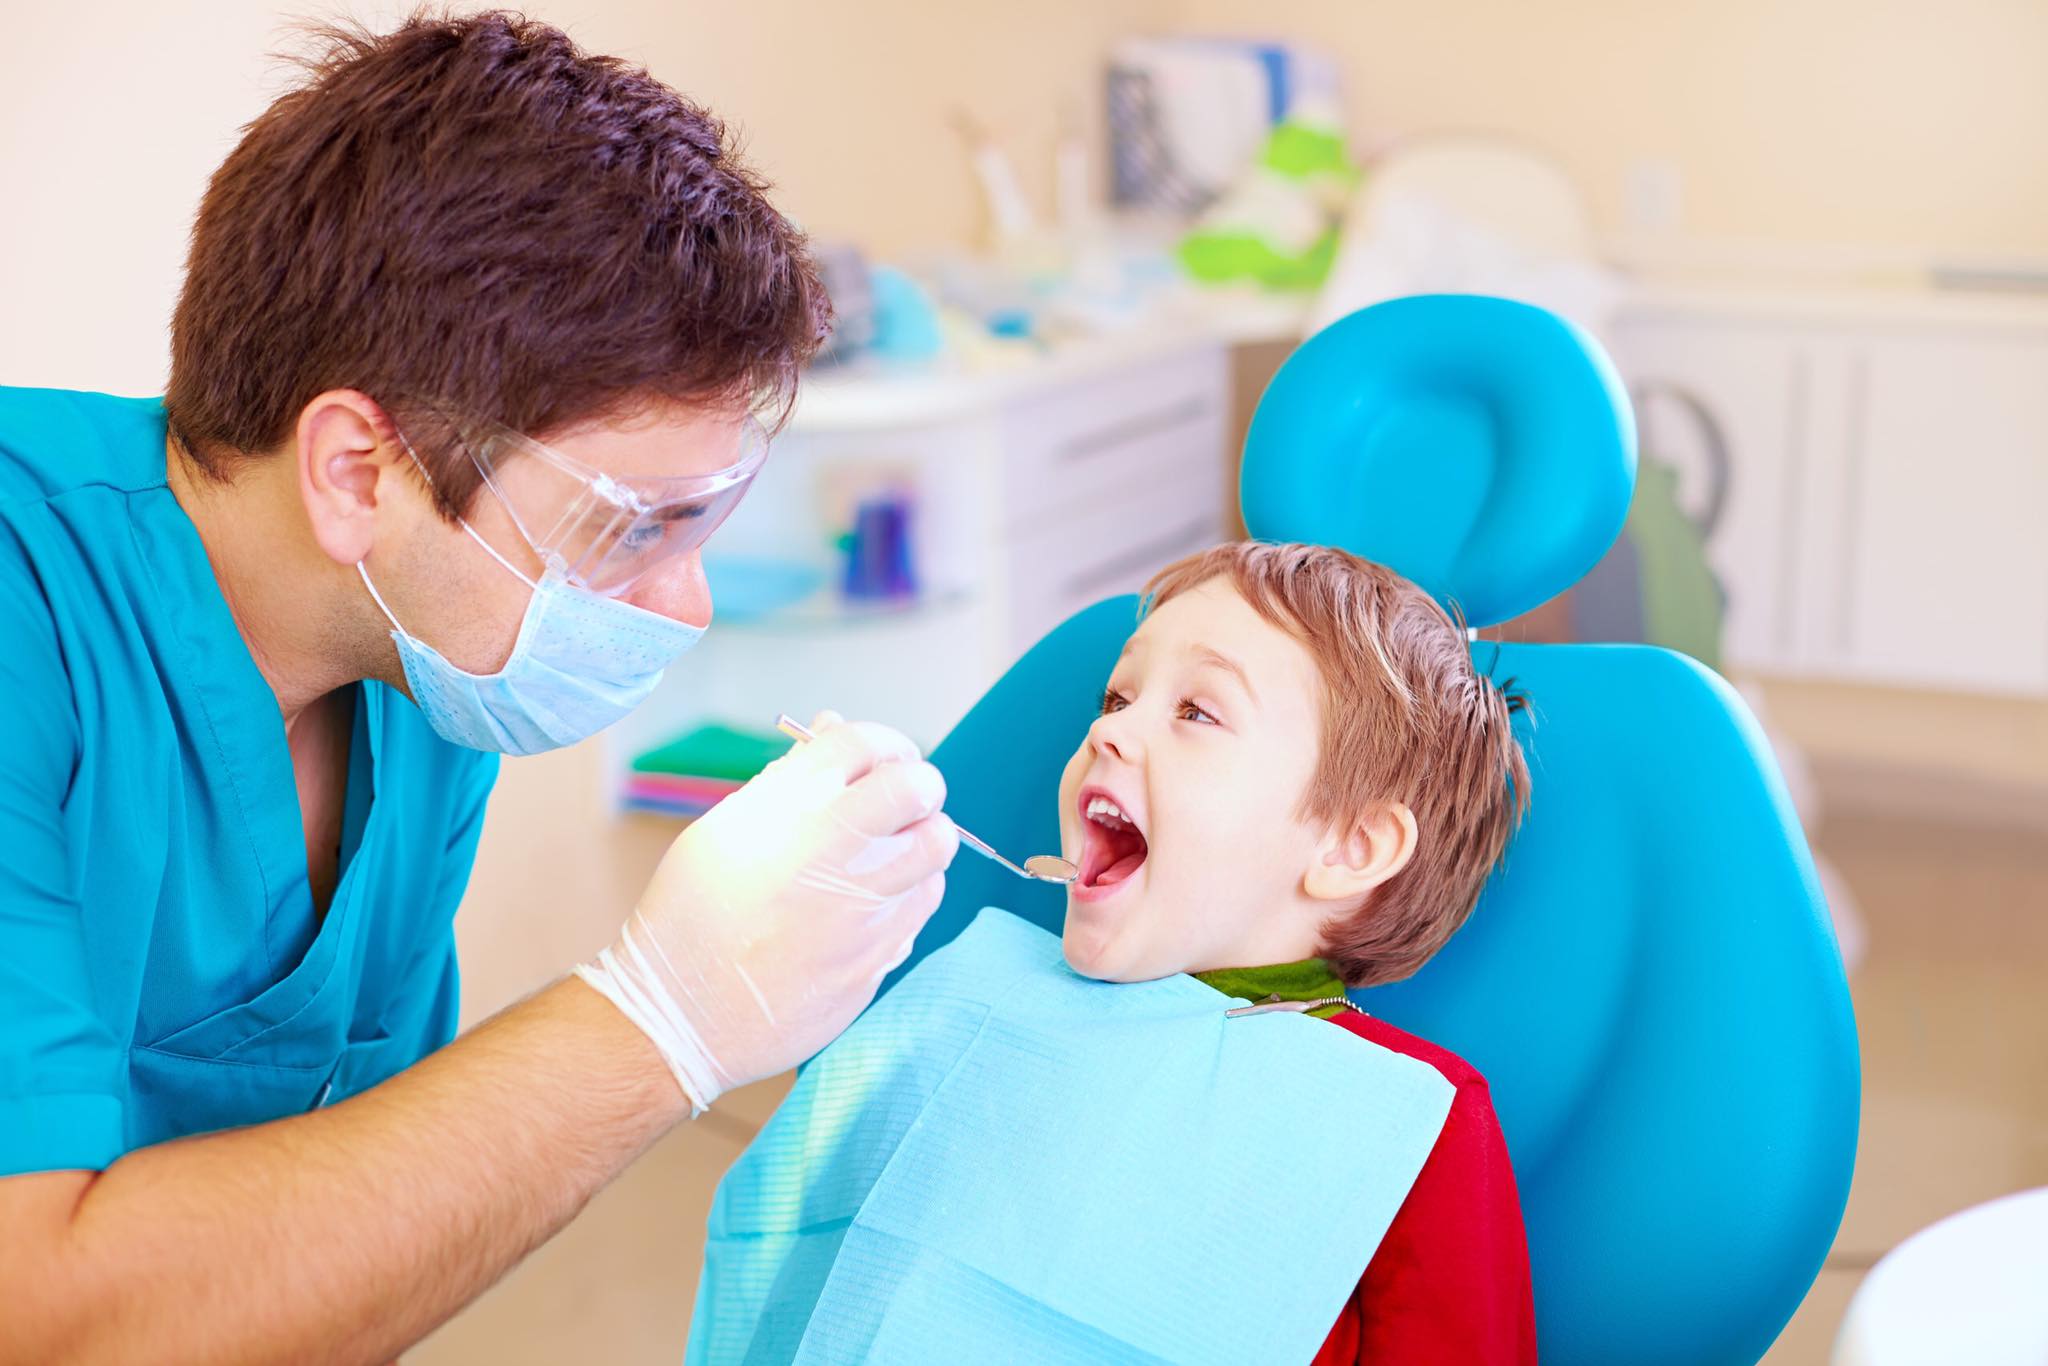 مطلوب طبيب اسنان براتب مغري جدا لدى عيادة اسنان